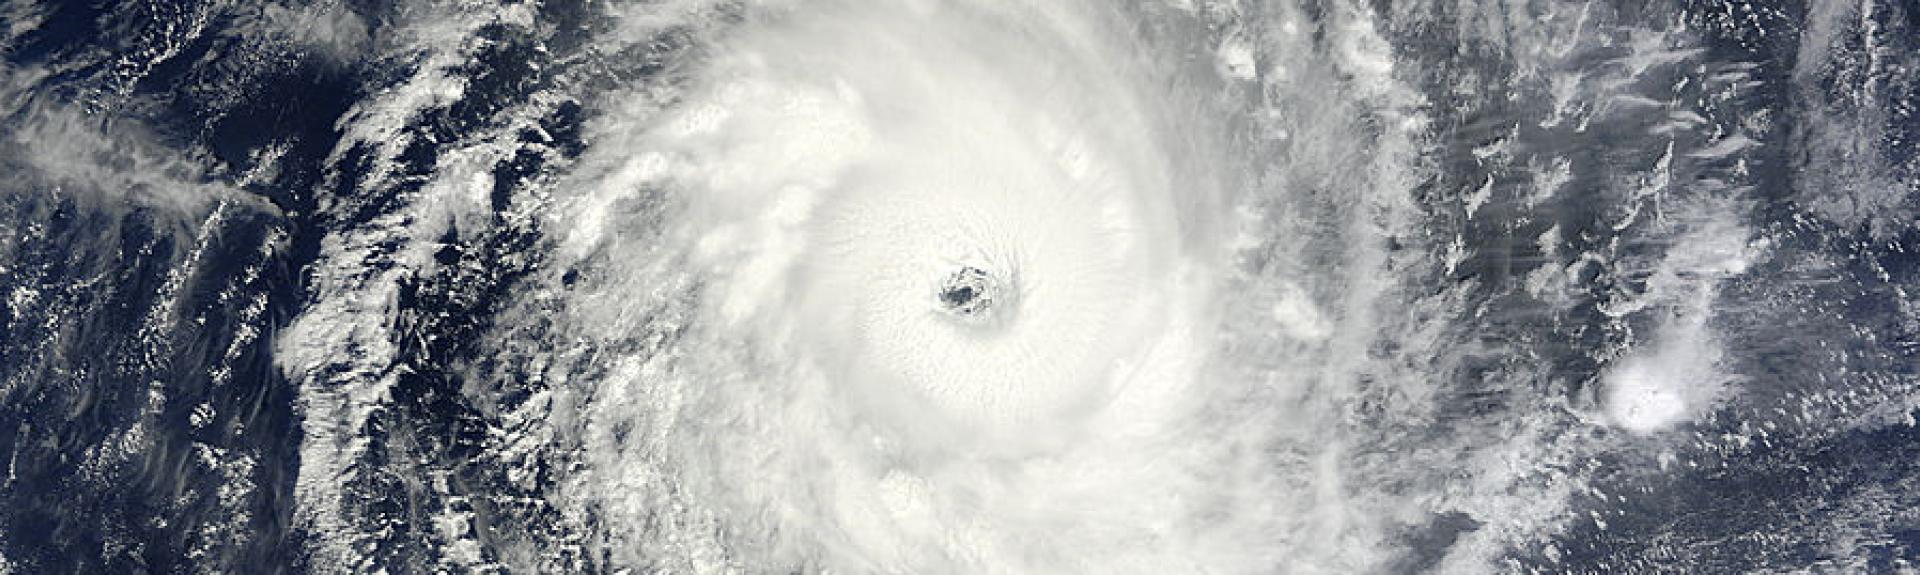 hurricane eye